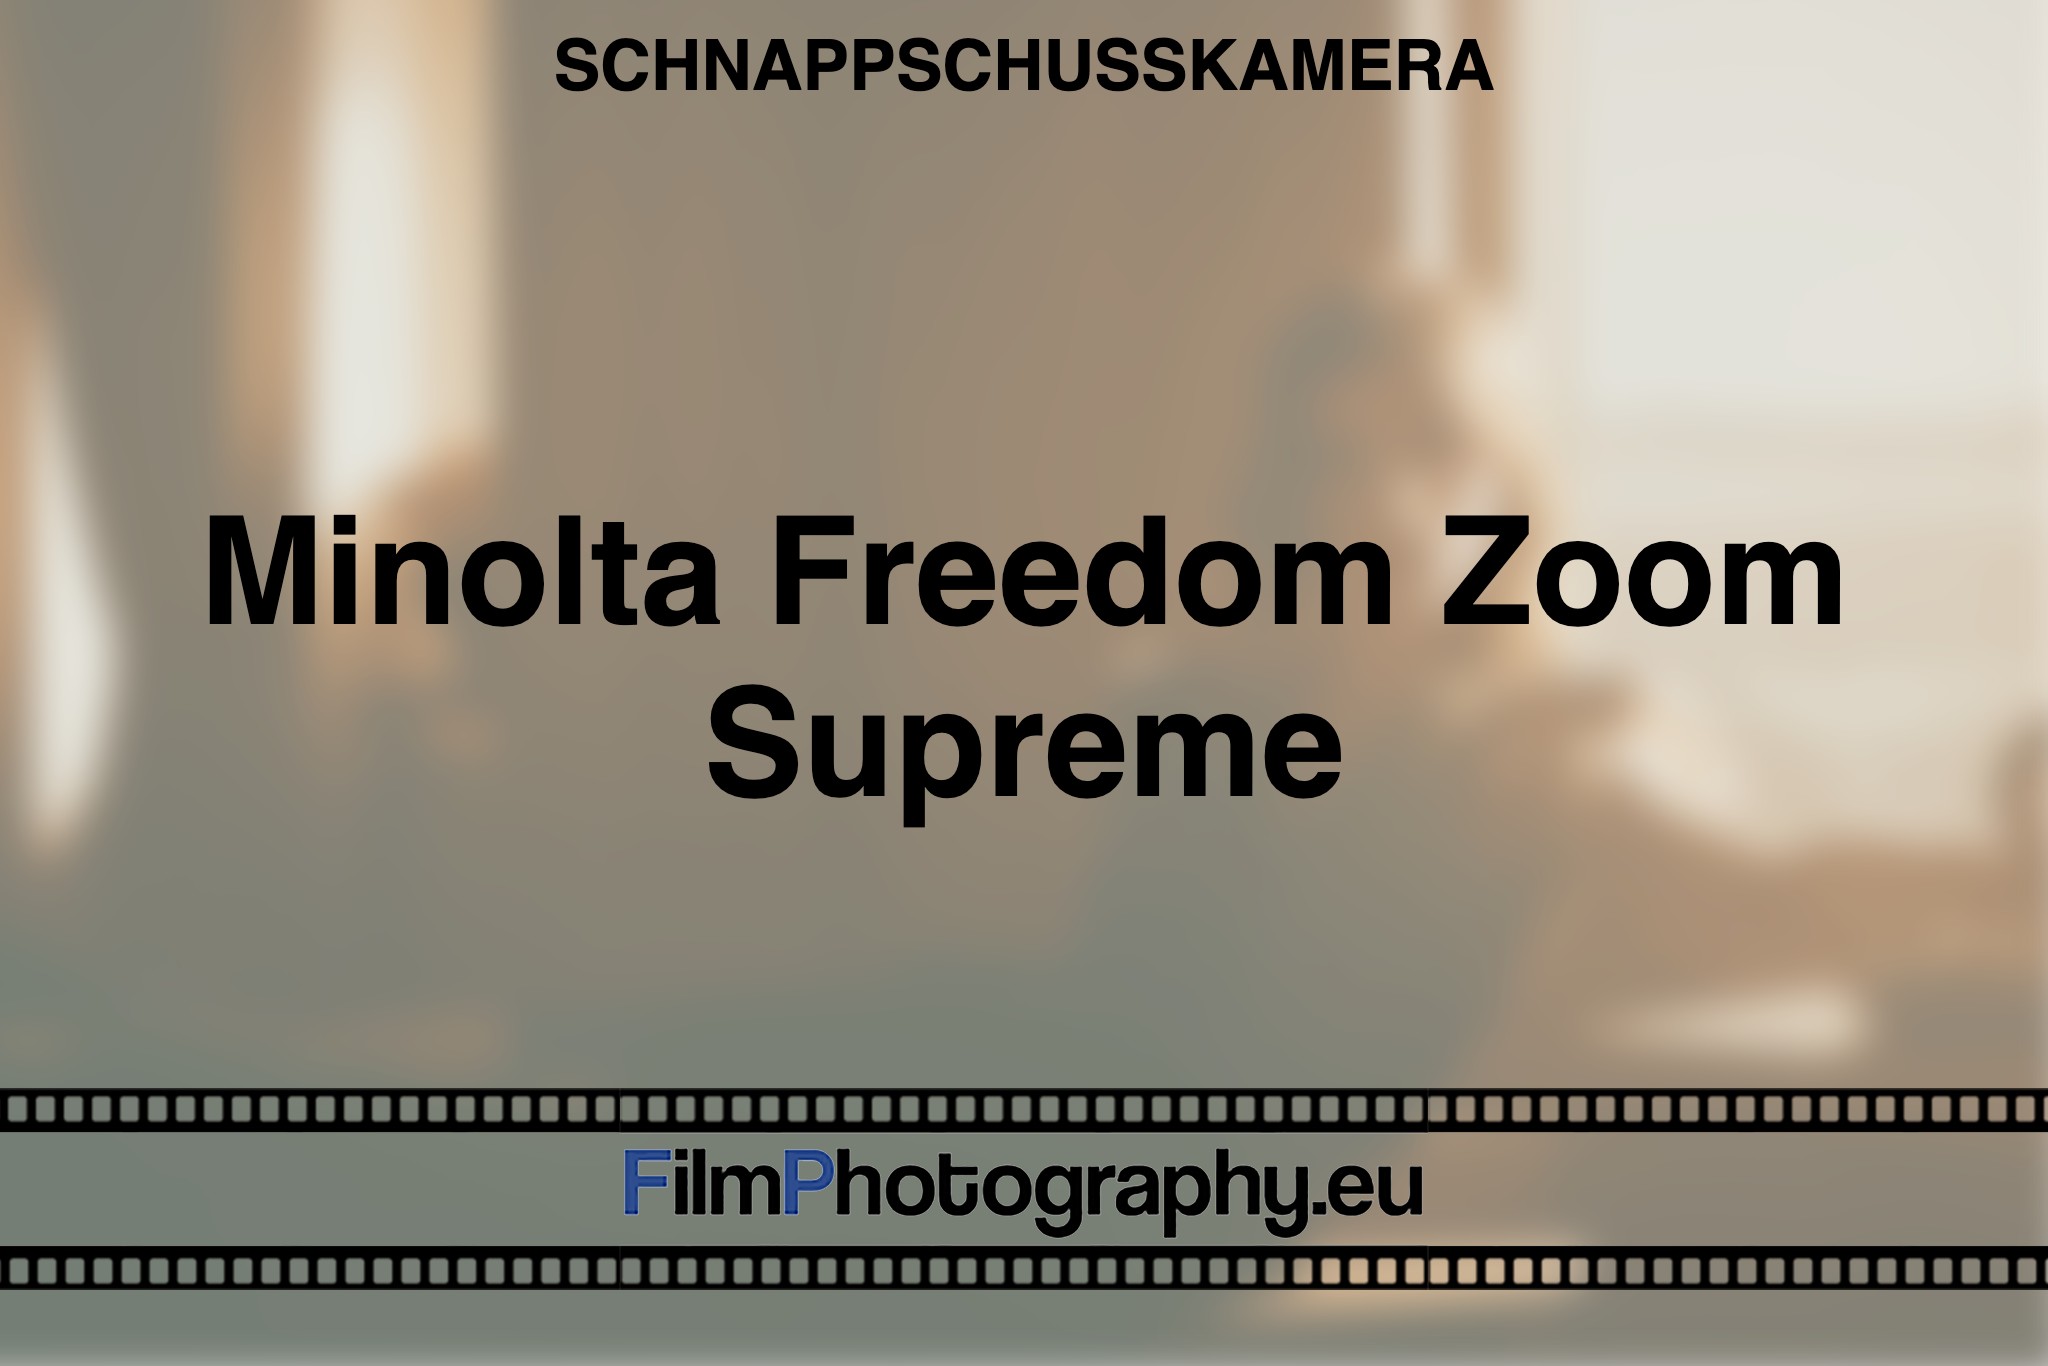 minolta-freedom-zoom-supreme-schnappschusskamera-bnv